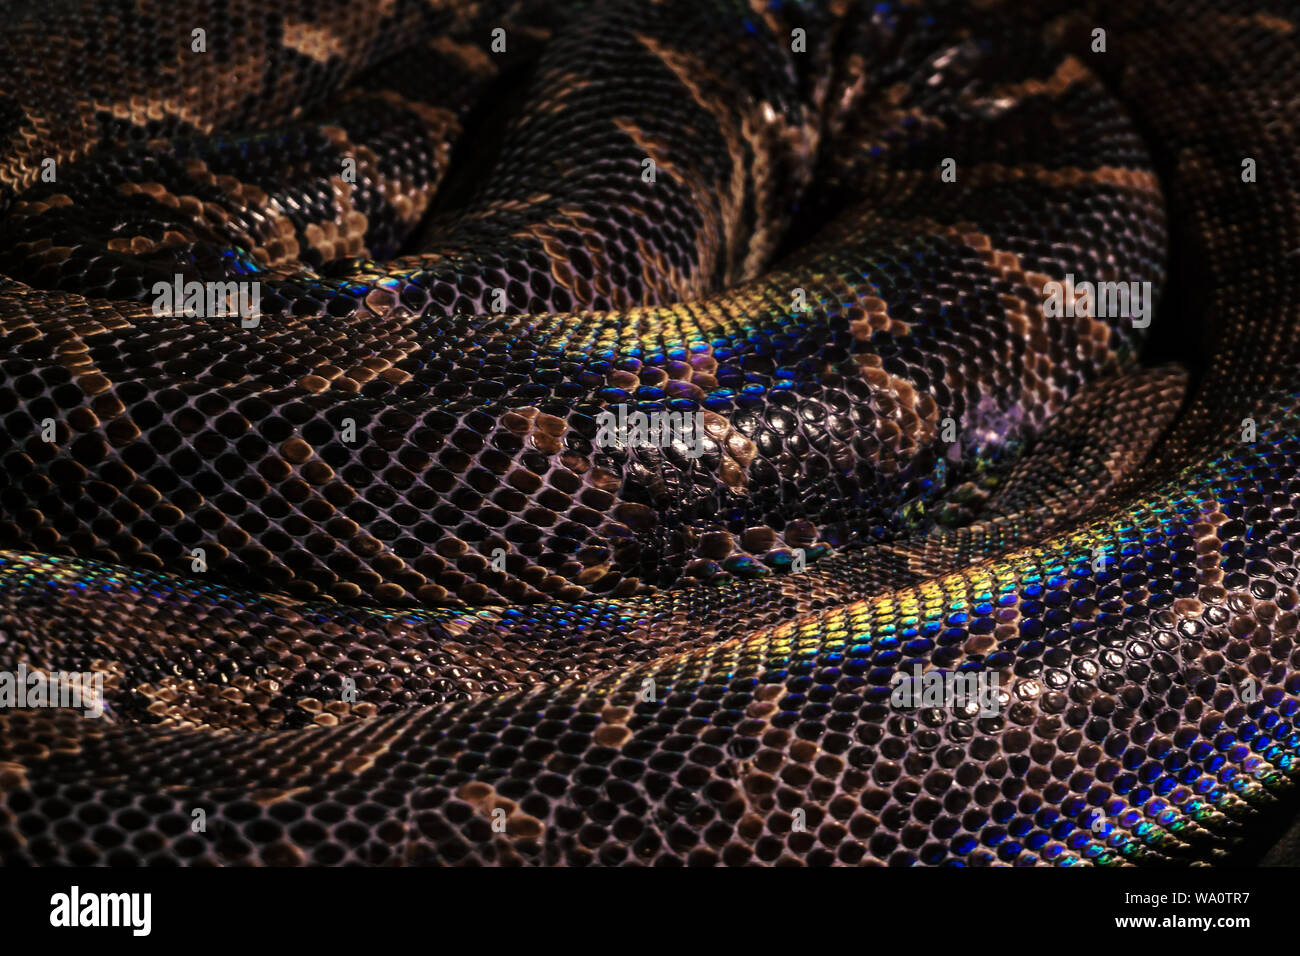 Contexte - bagues serpent enroulé animé avec de grandes écailles brunes avec rainbow met en lumière Banque D'Images